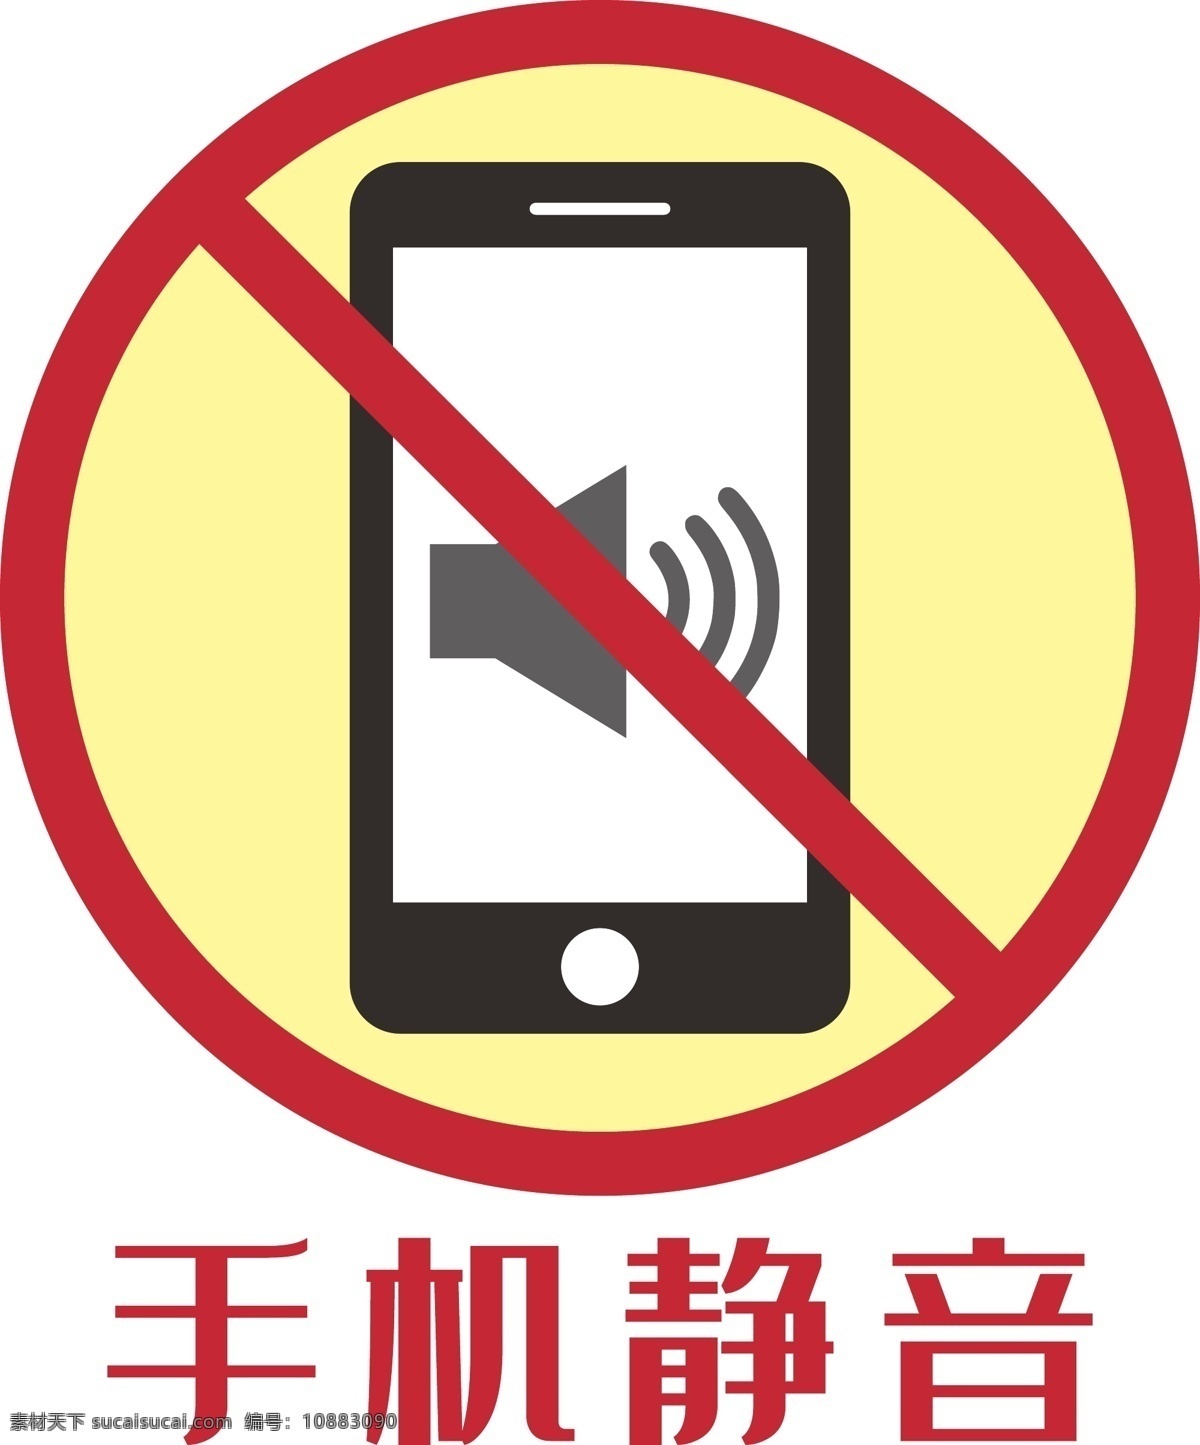 静音图标 手机 禁止 静音 发源 手机静音